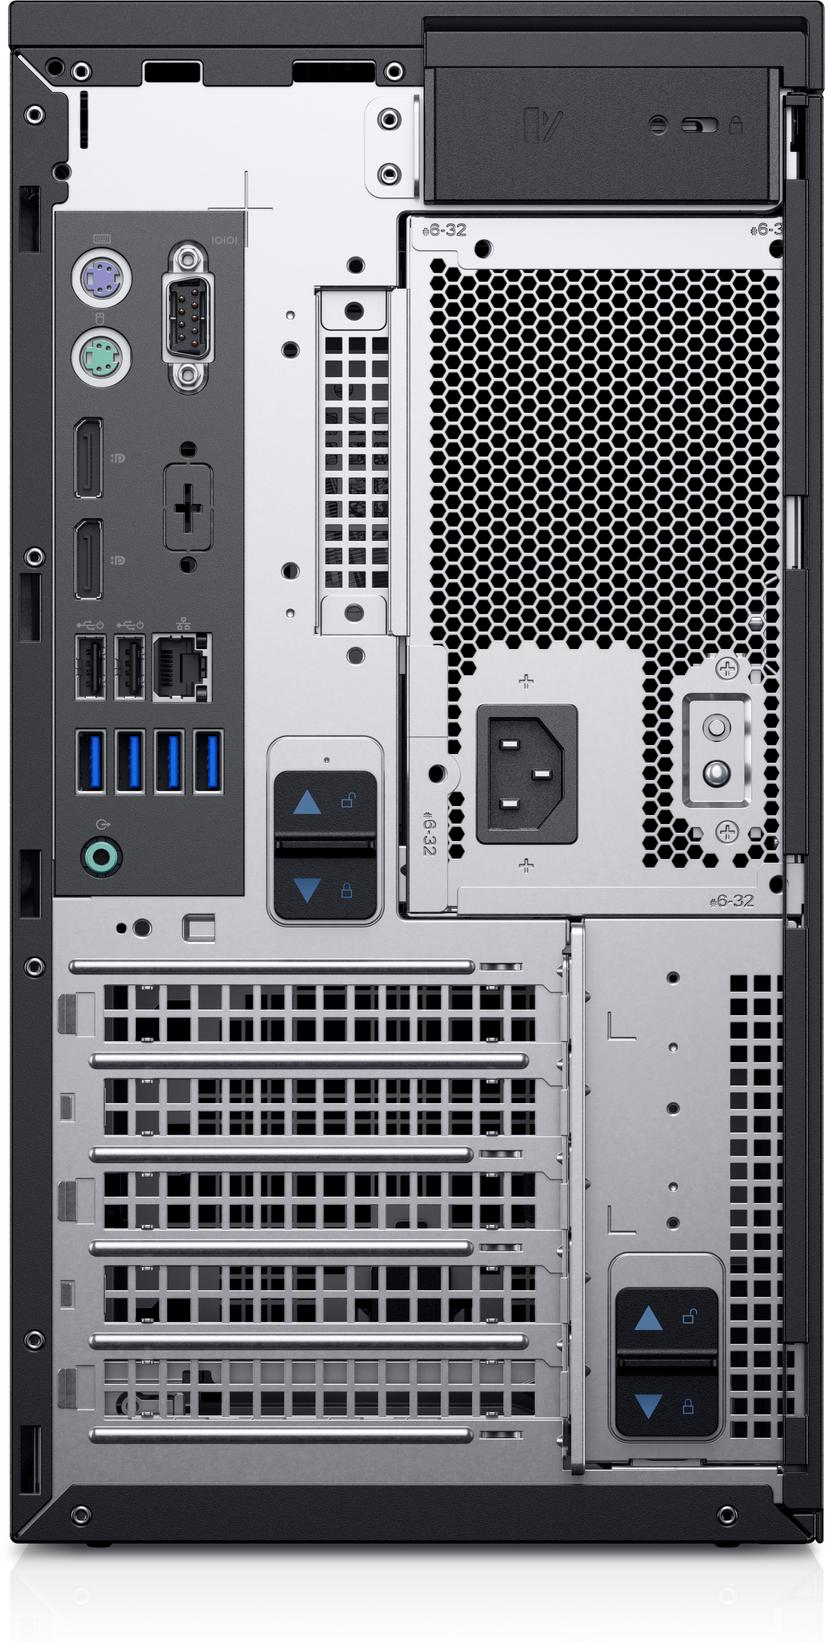 Dell EMC PowerEdge T40 Xeon E-2224G Firerkjerne